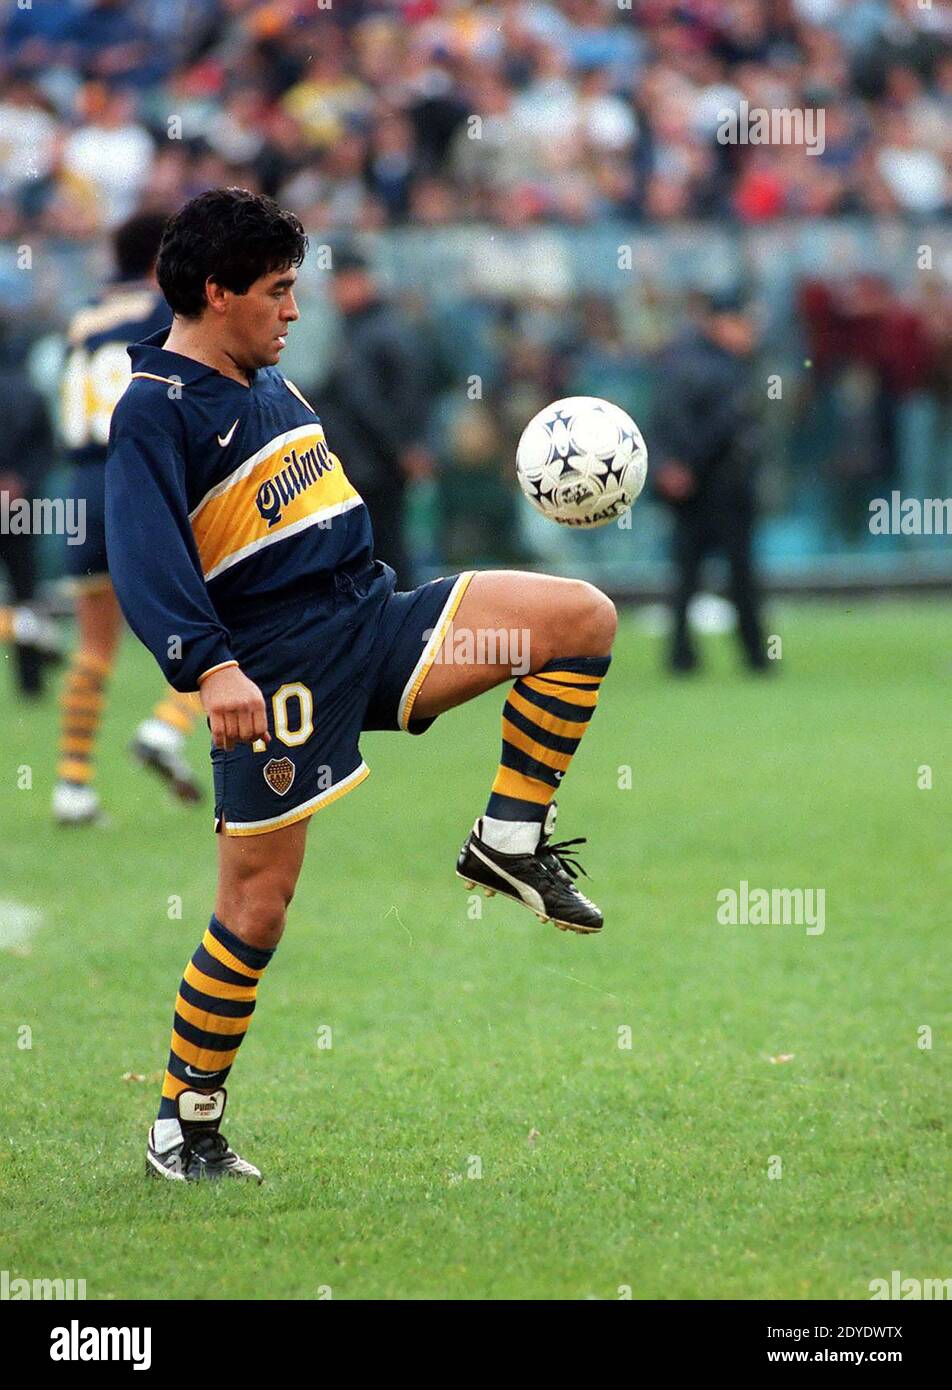 Diego Maradona jouant pour Boca Juniors dans le stade de la Bombonera, 1995 Banque D'Images